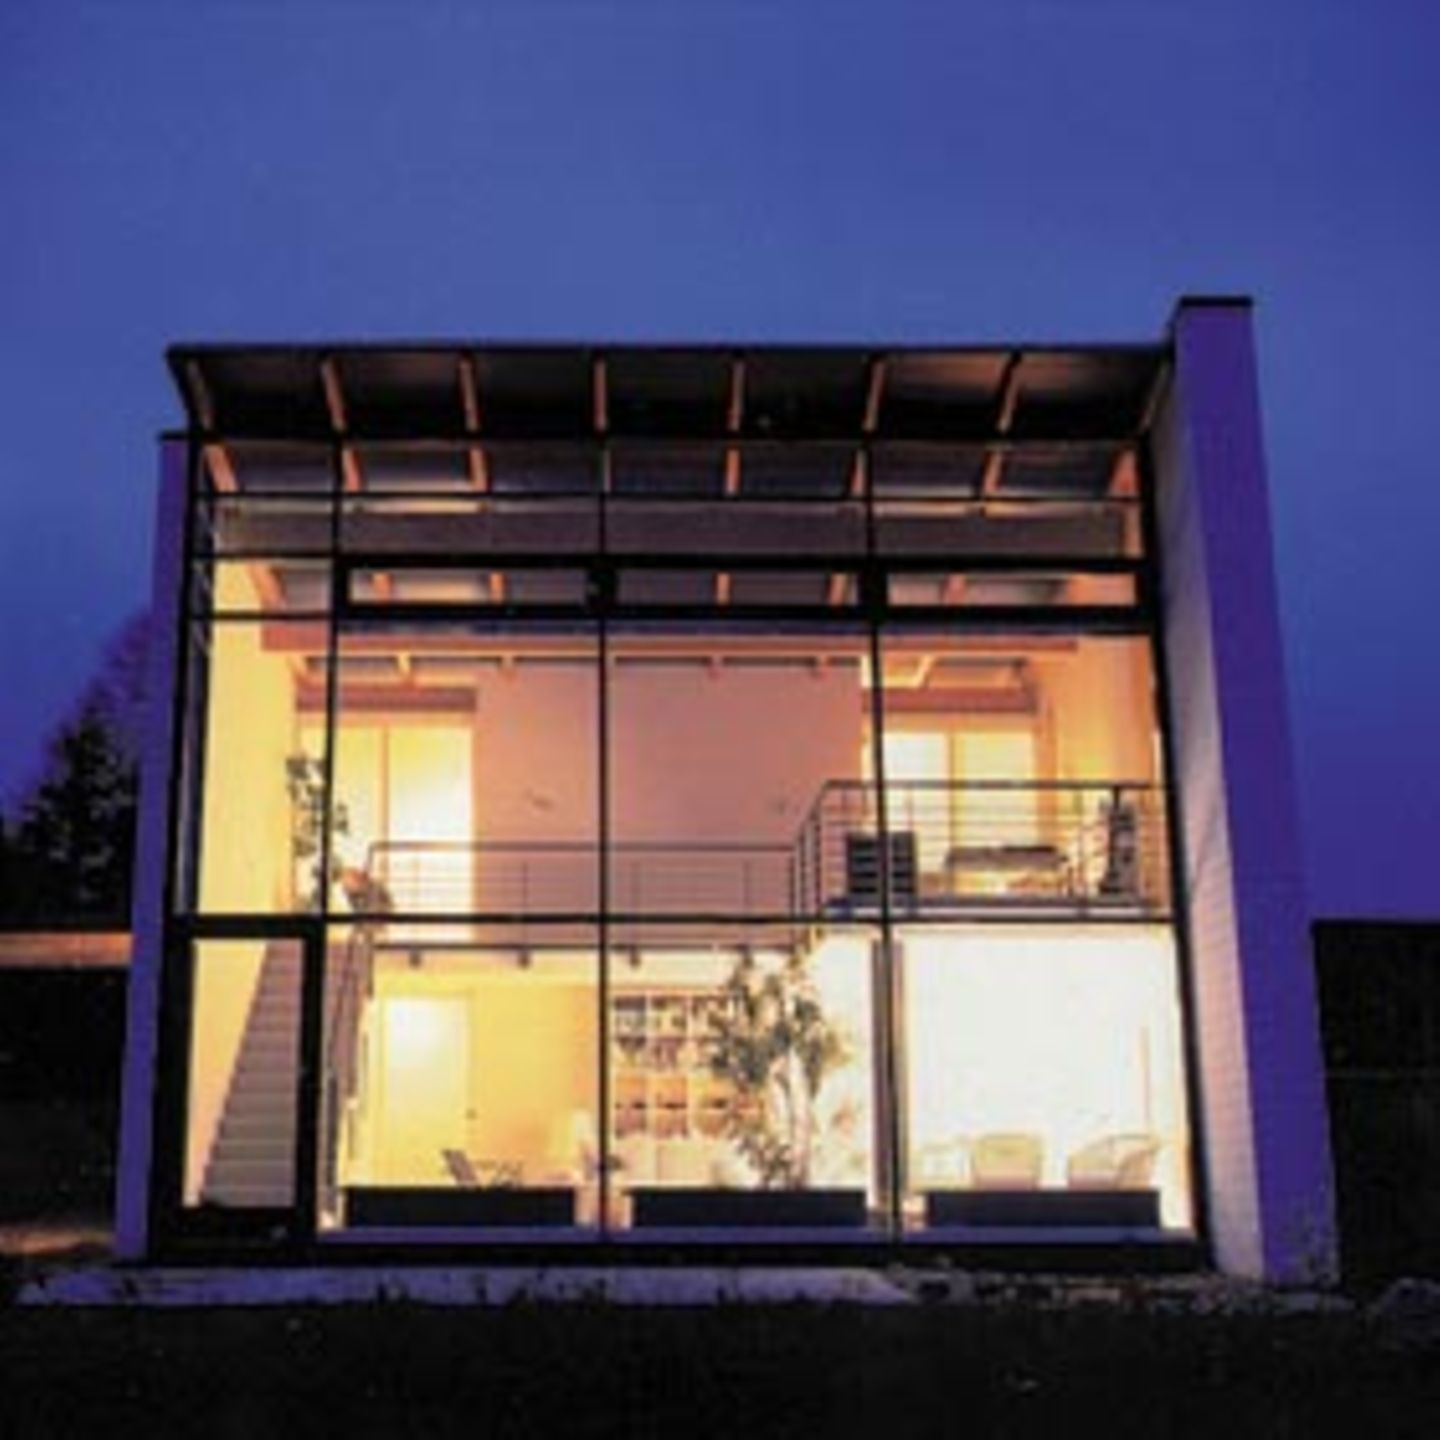 Haus Hasper in Tellingstedt bei Heide macht Transparenz zum Programm. Der schmale Baukörper für nur eine Person entstand als klarer Kubus.